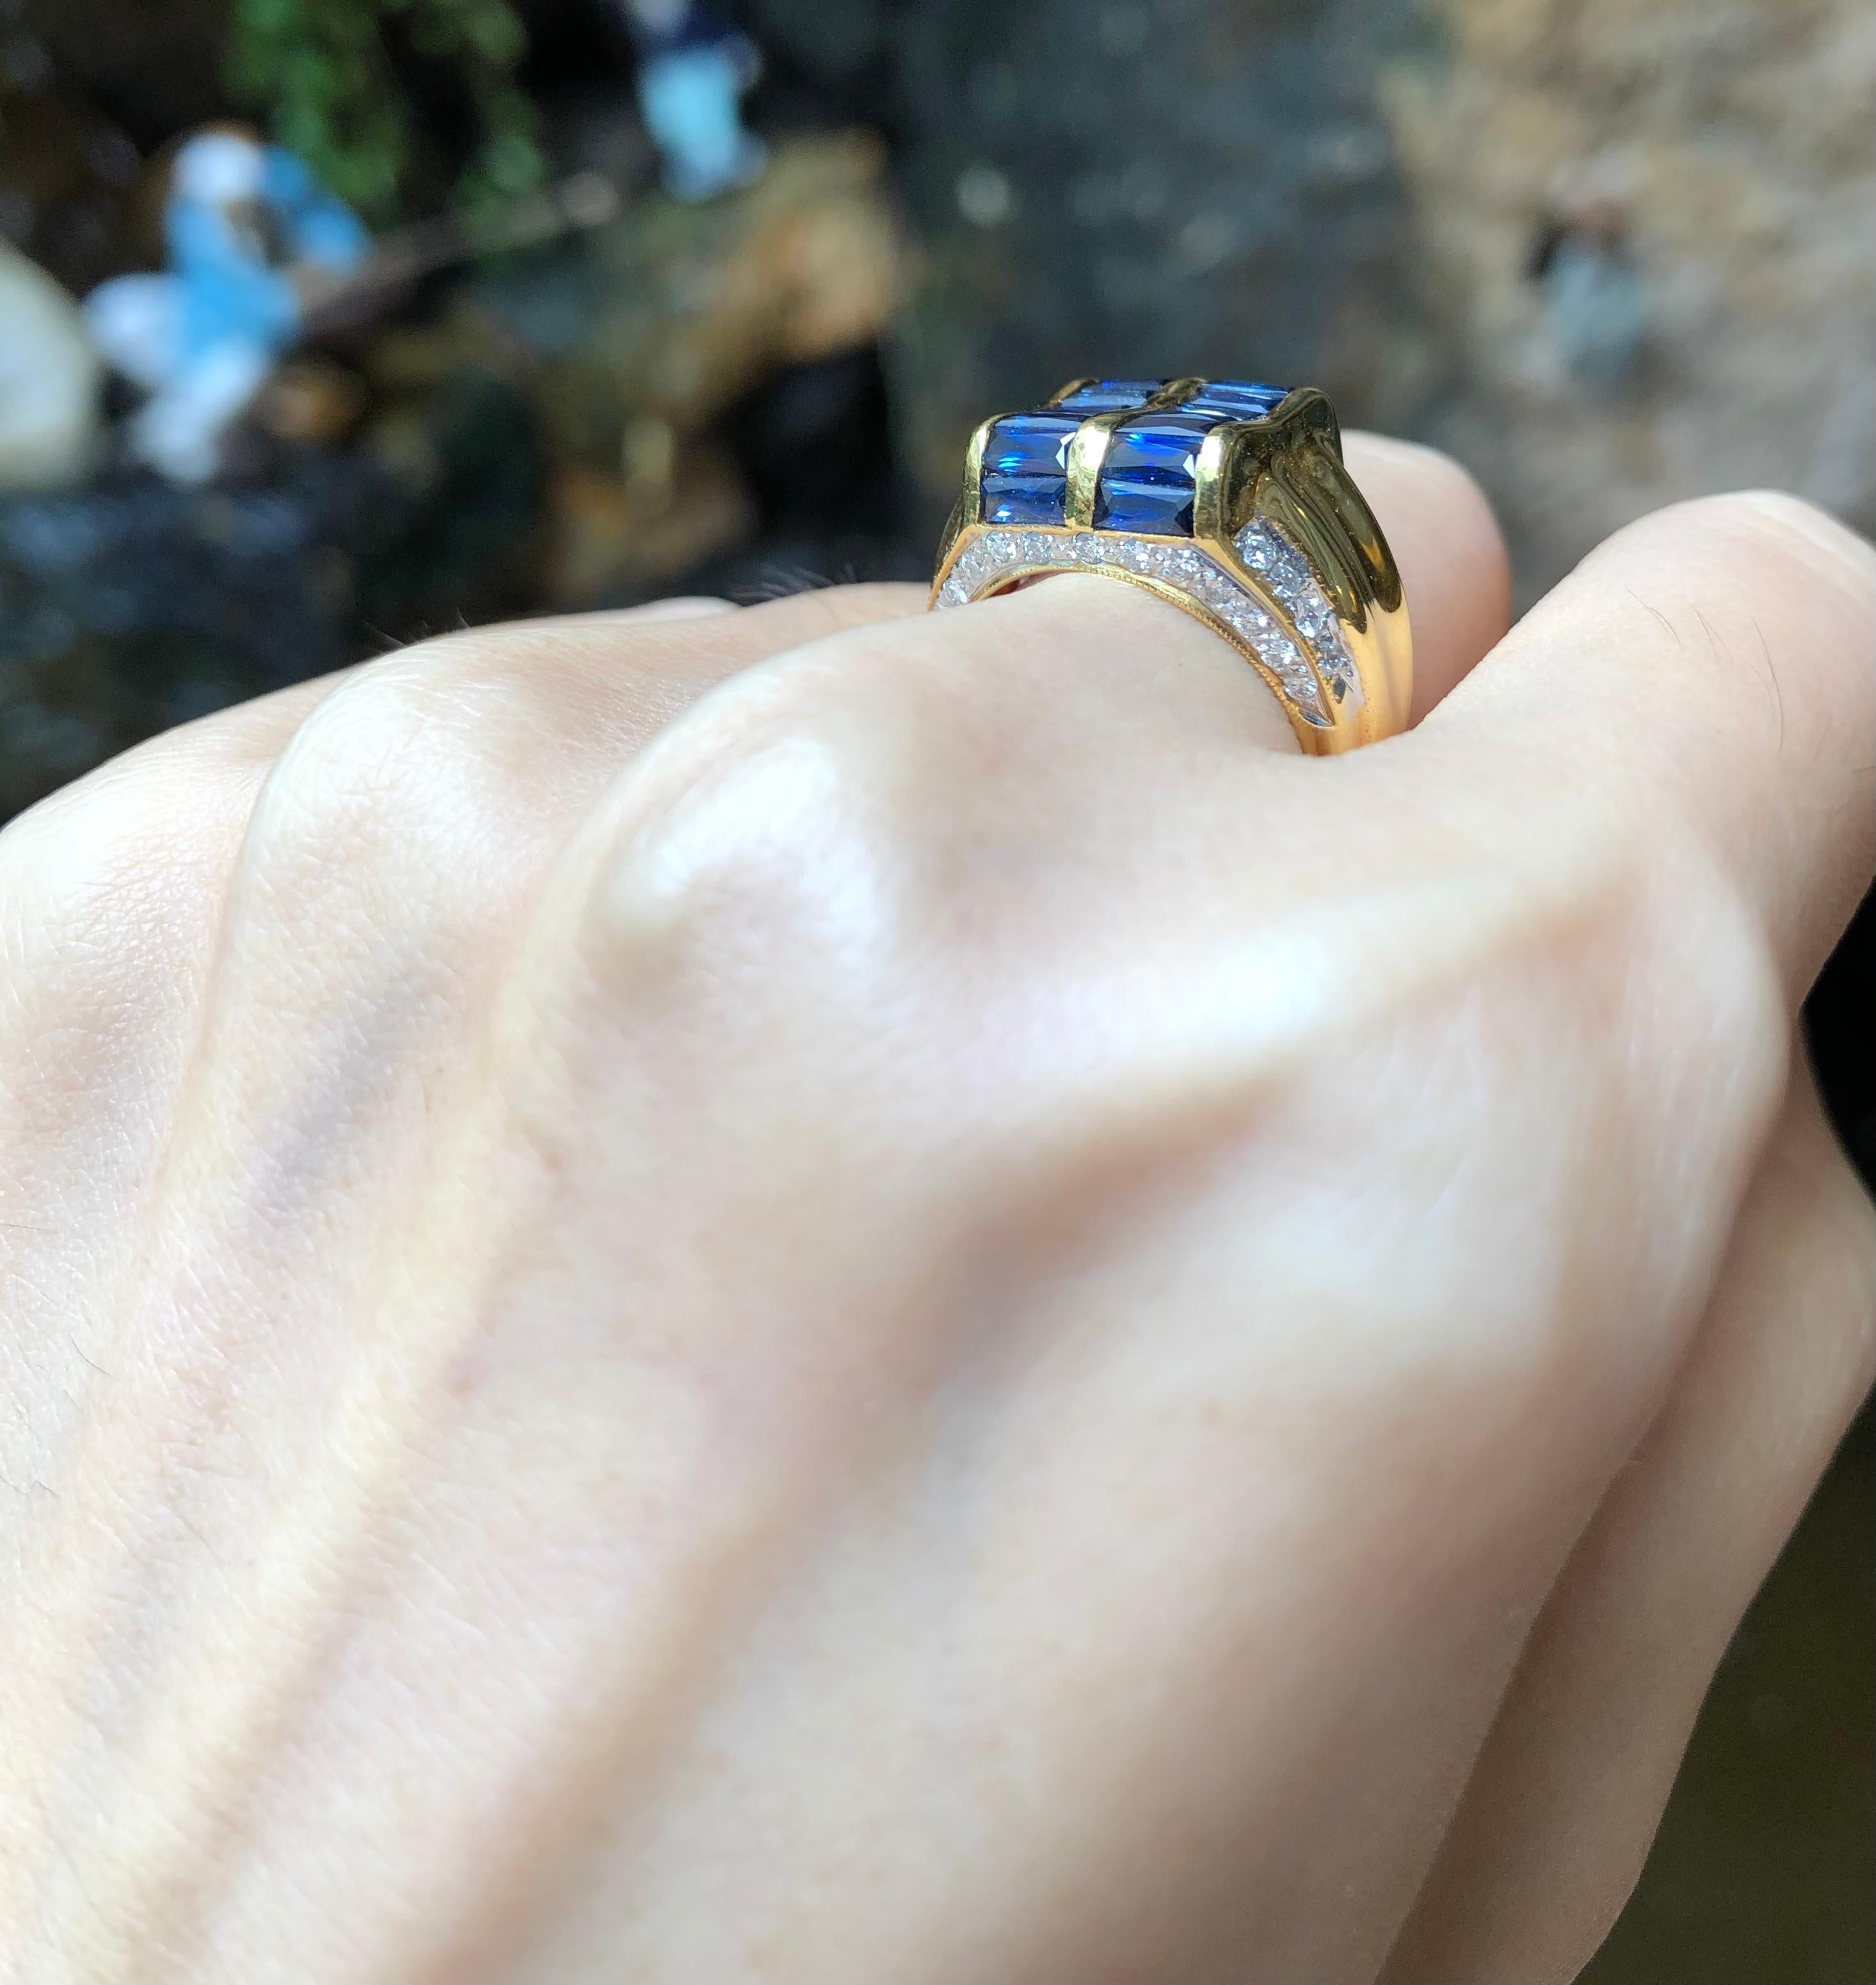 Blauer Saphir 3,48 Karat mit Diamant 0,51 Karat Ring in 18 Karat Goldfassung

Breite:  1.2 cm 
Länge: 1,4 cm
Ringgröße: 51
Gesamtgewicht: 10,61 Gramm

